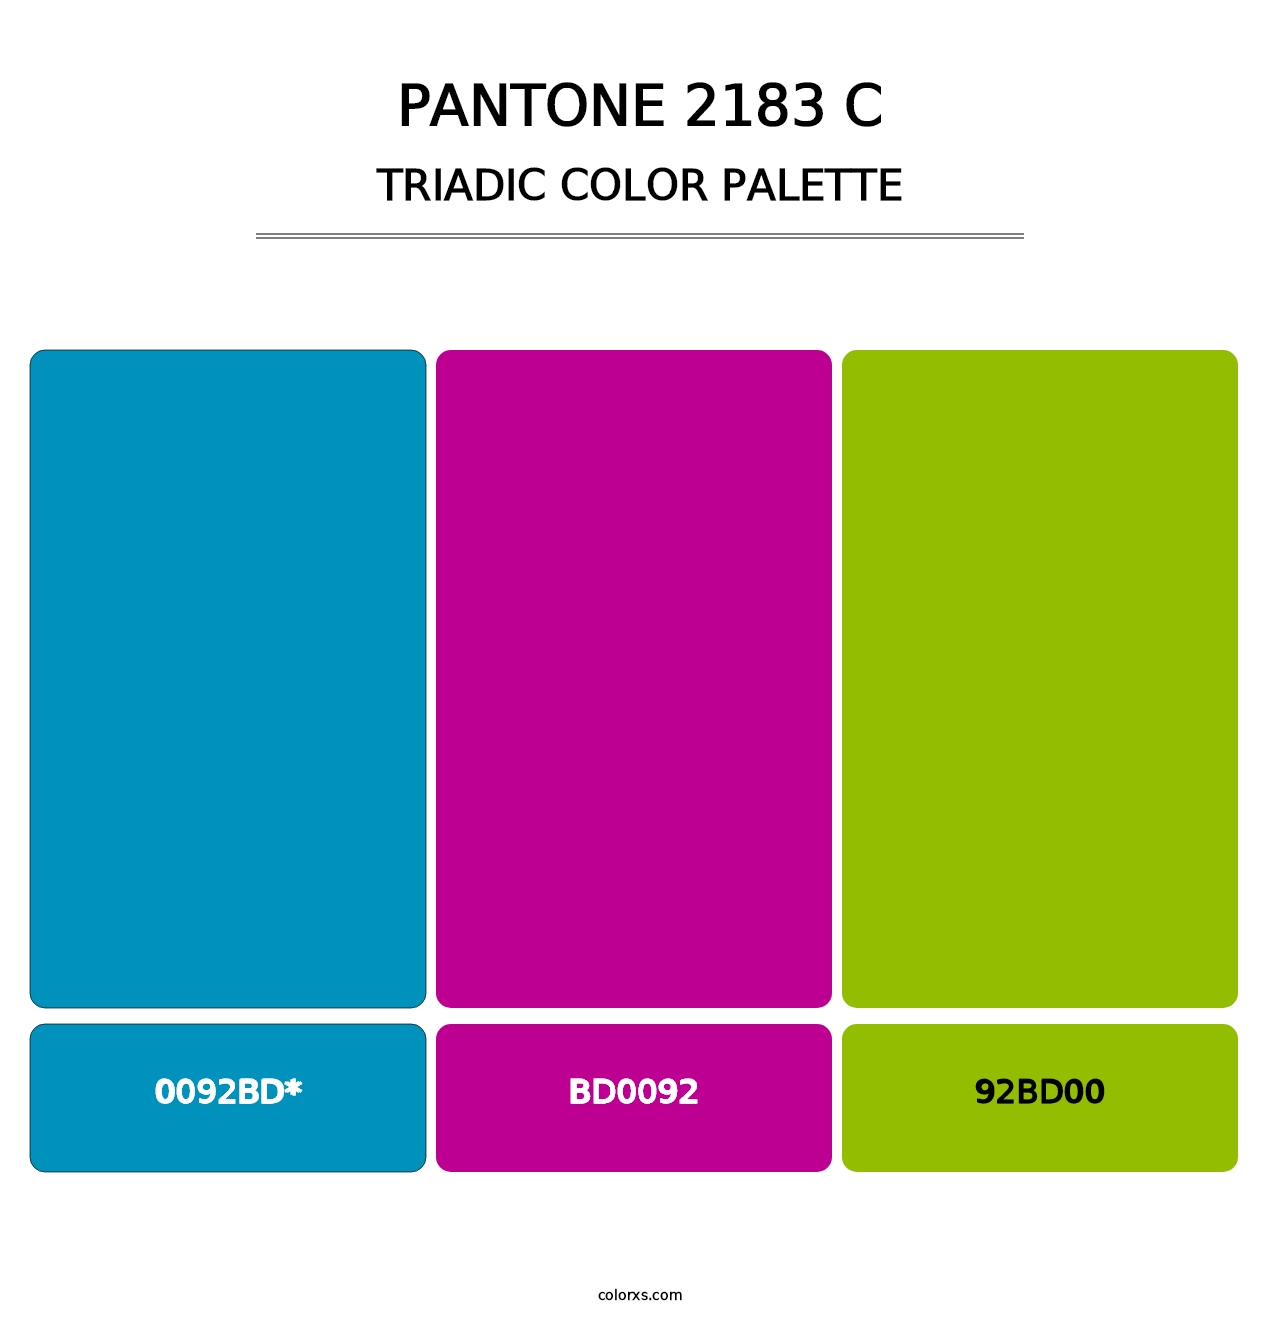 PANTONE 2183 C - Triadic Color Palette